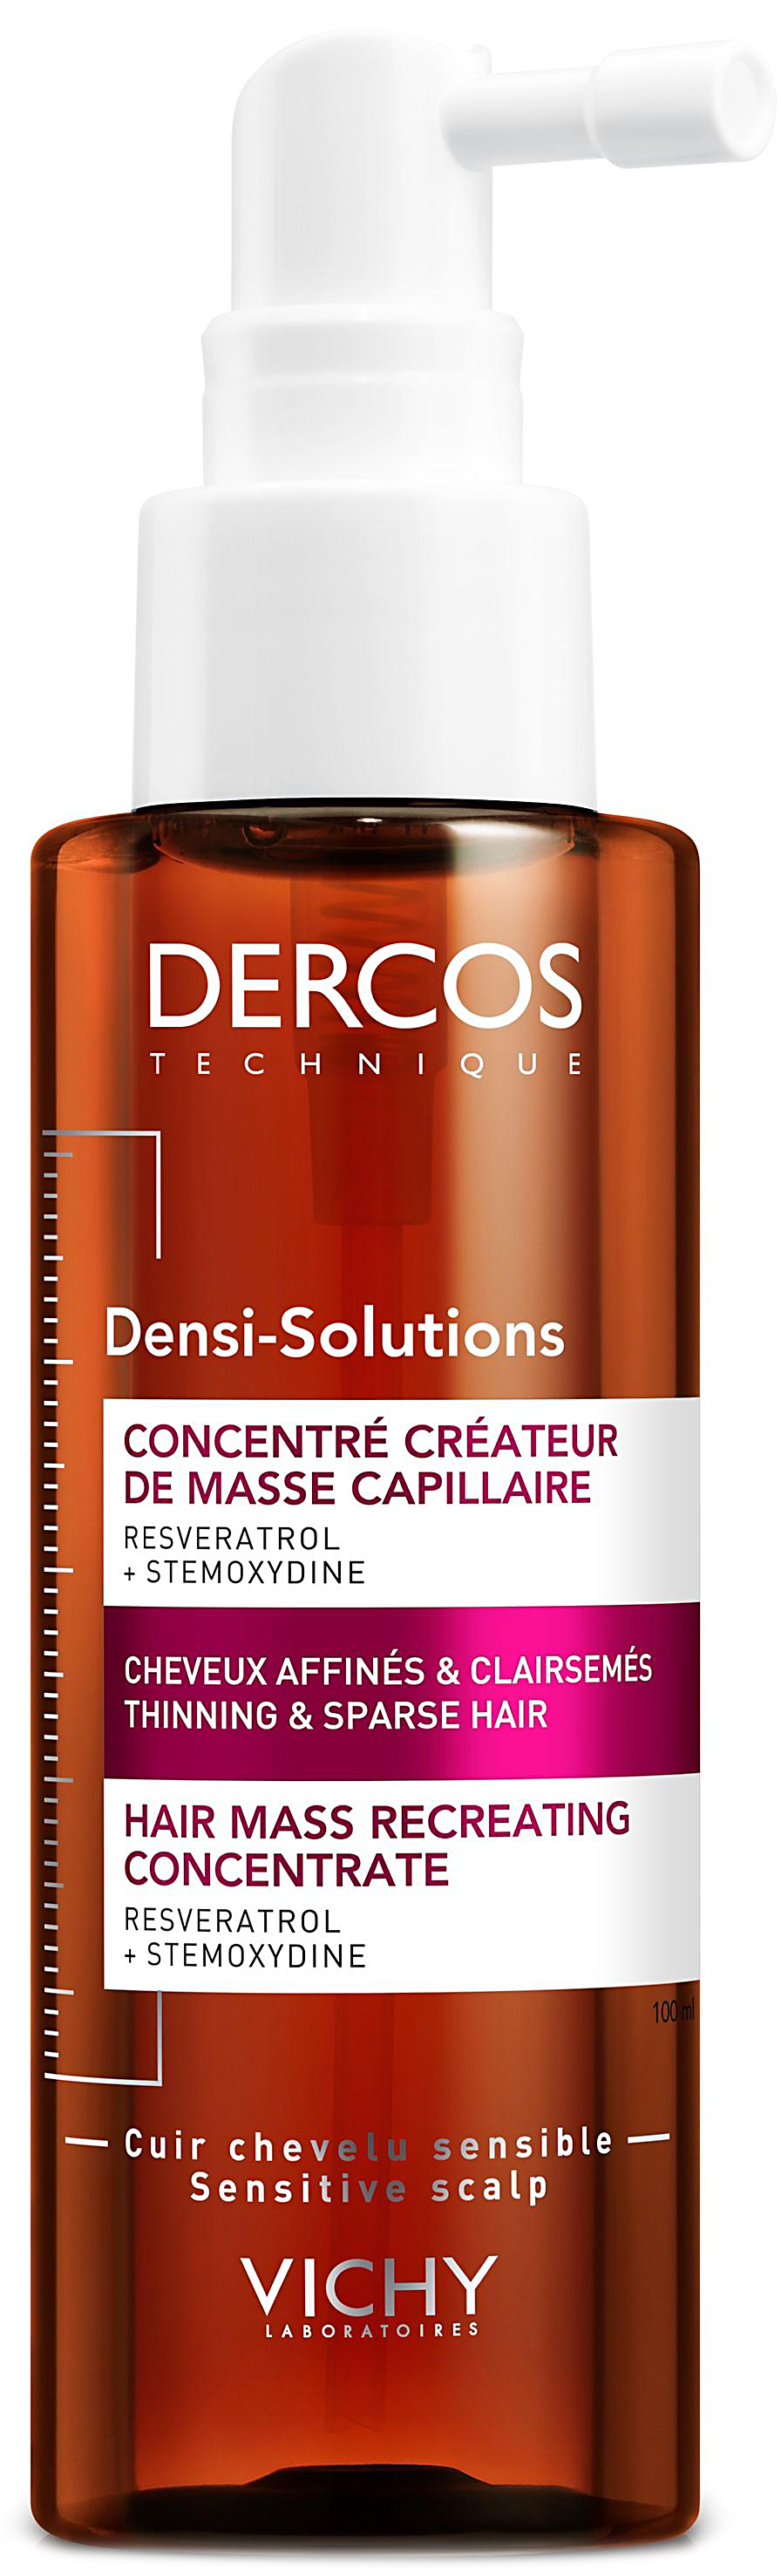 Dercos densi-solutions сыворотка для роста волос 100мл Vichy (Виши)